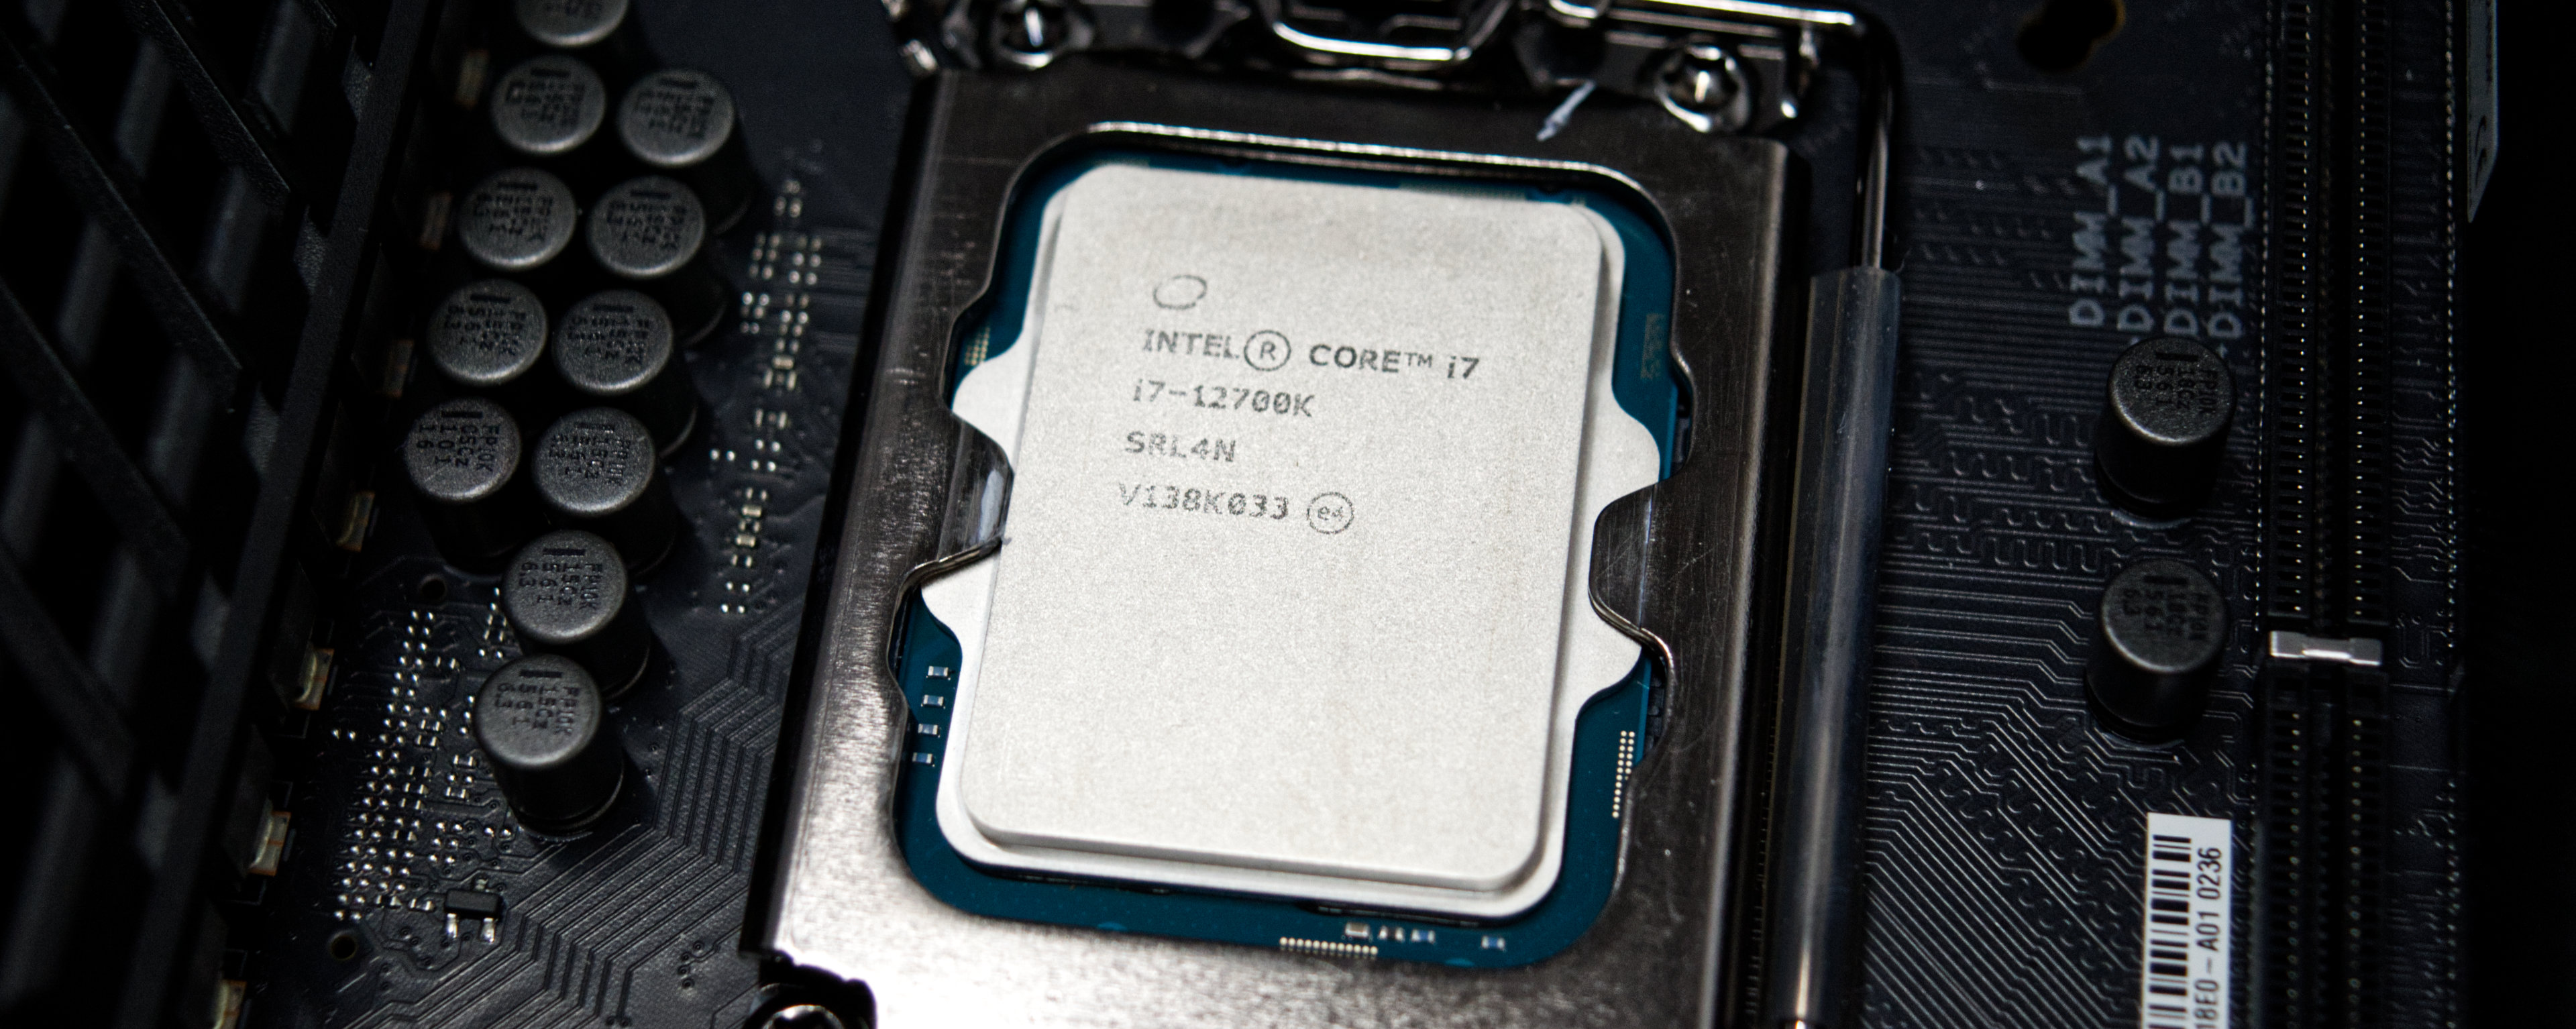 12700 oem. Intel Core i7 12700k. Intel Core i7-12700f. Intel Core i5 12700k. Процессор Intel Core i7-12700k OEM.